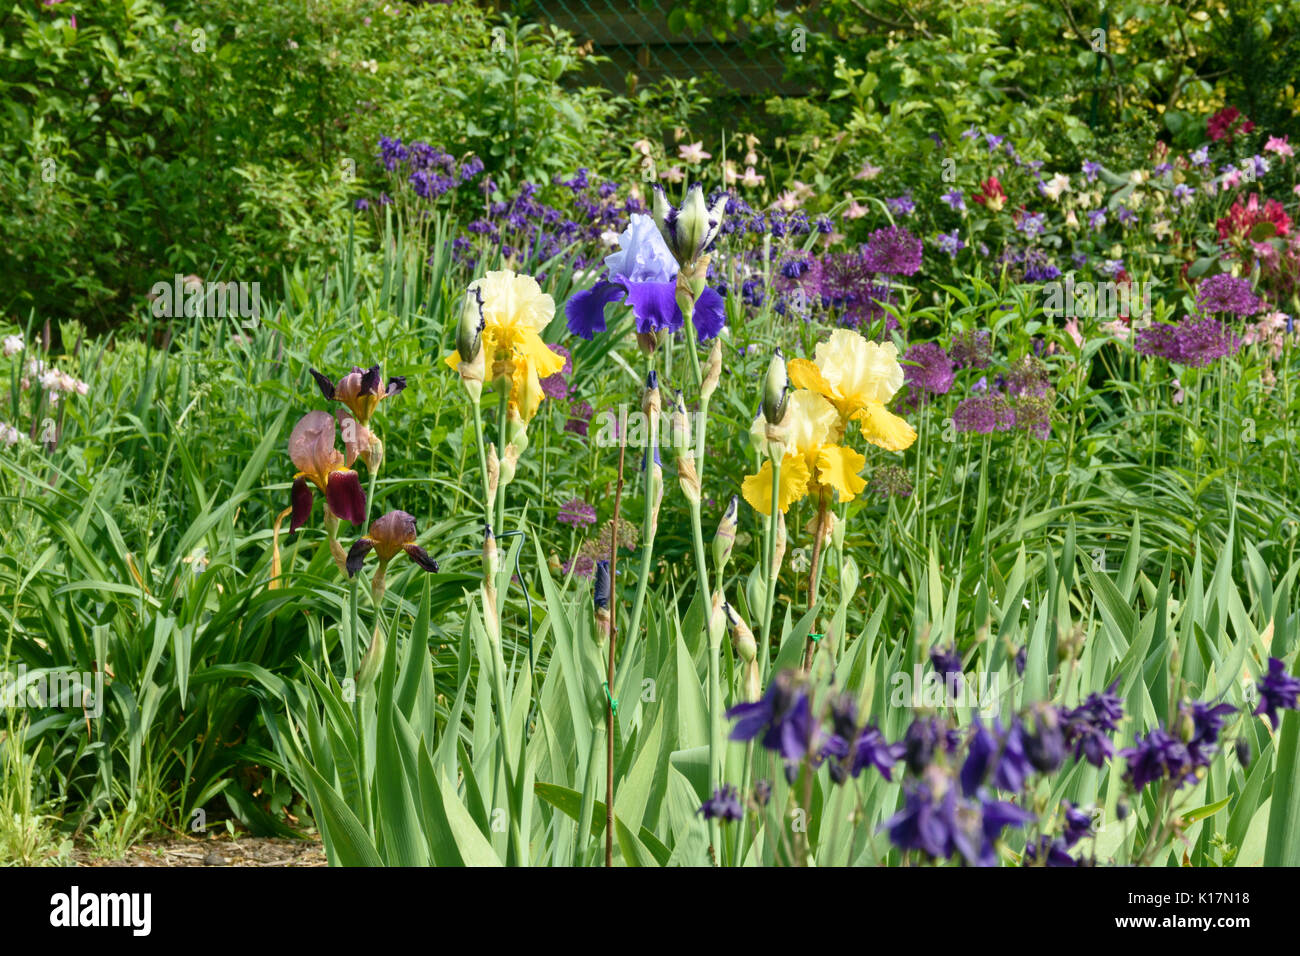 Les iris barbus (iris barbata) et ornementales d'oignons (Allium) Banque D'Images